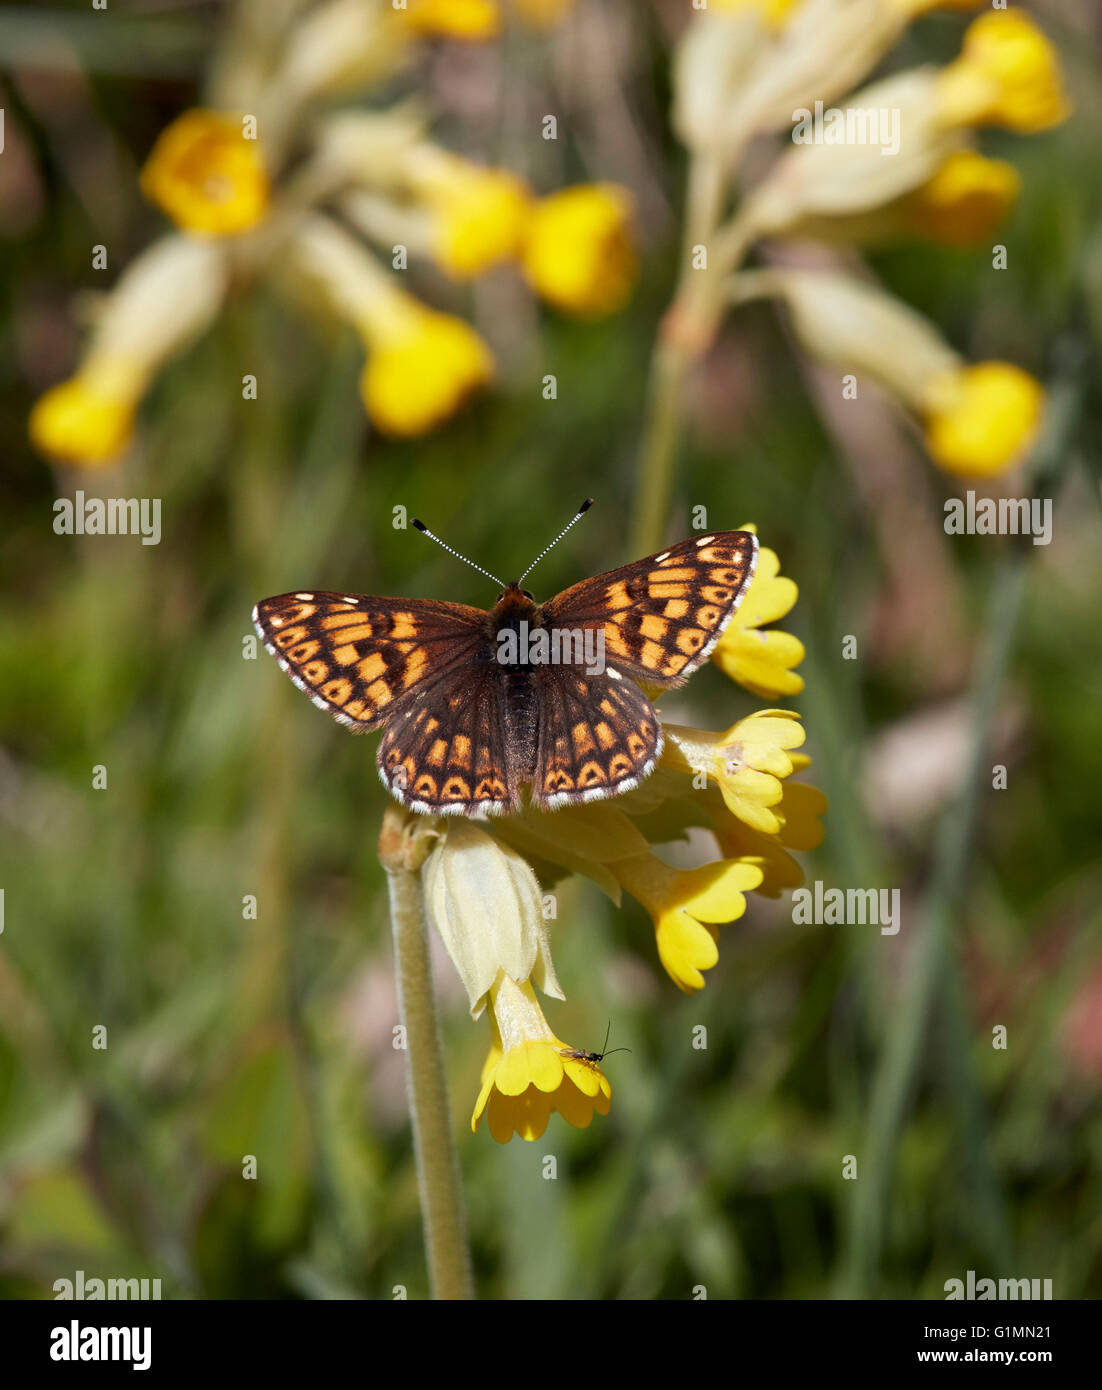 Herzog von Burgund Schmetterling auf Schlüsselblume Blumen.  Noar Hill Naturschutzgebiet, Selborne, Hampshire, Surrey, England. Stockfoto